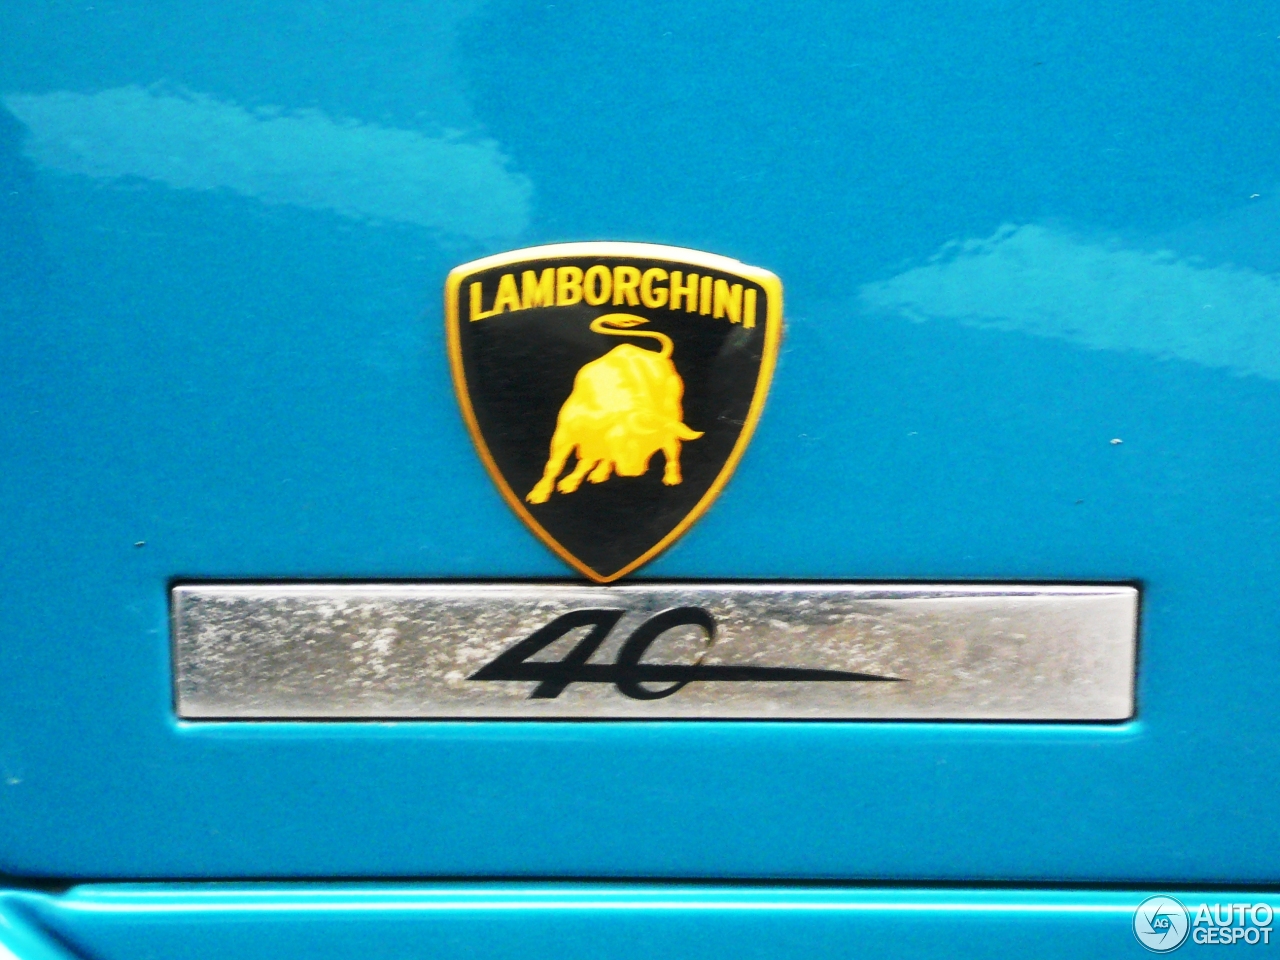 Lamborghini Murciélago 40th Anniversary Edition